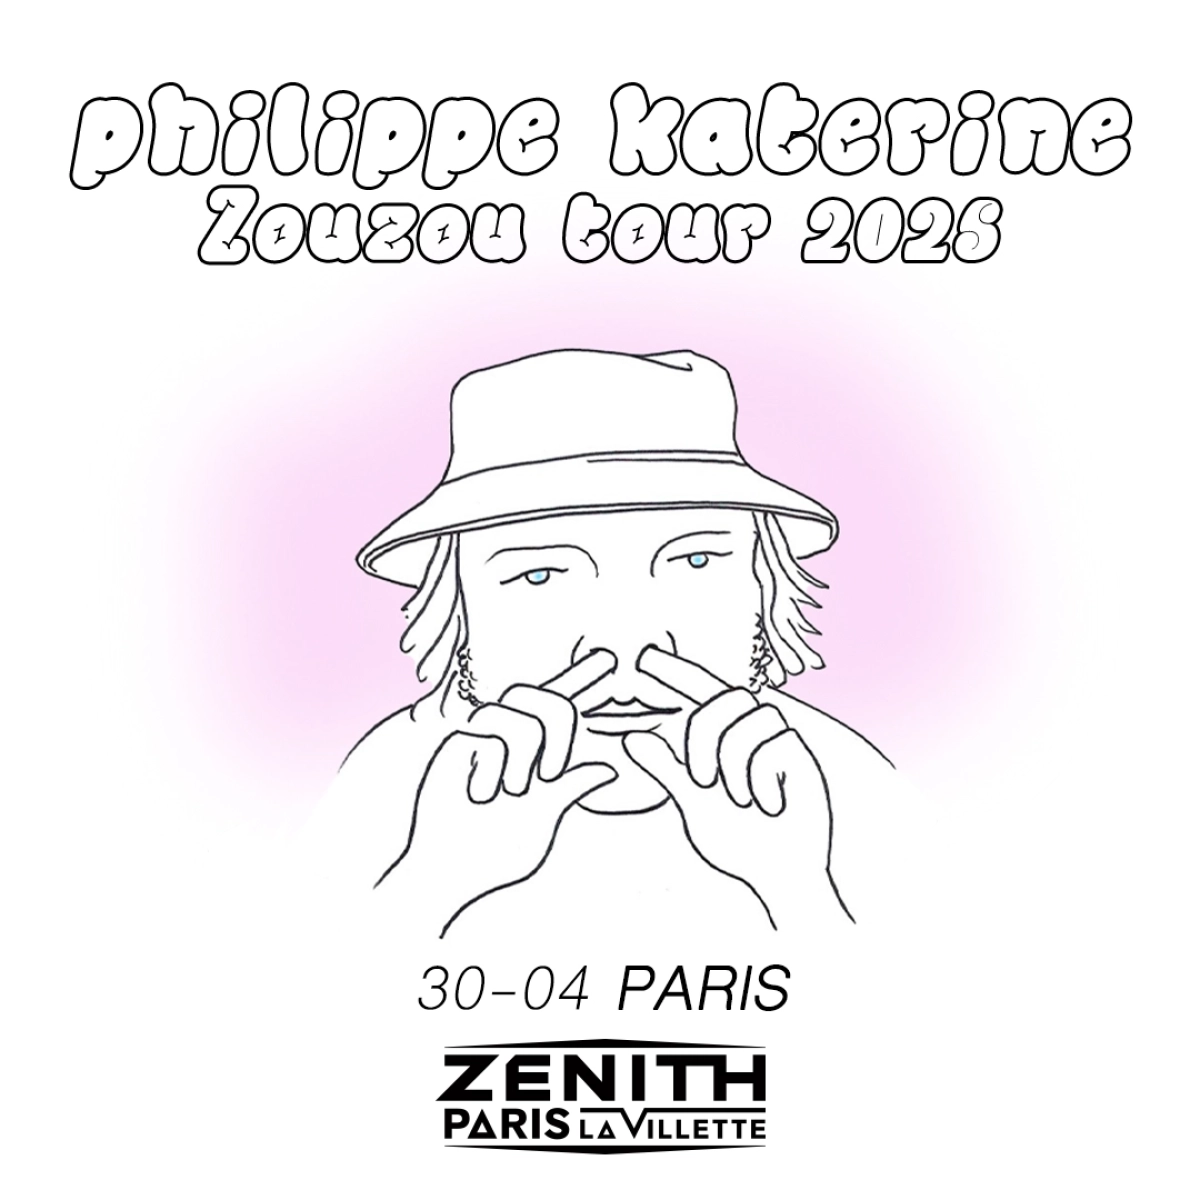 Philippe Katerine in der Zenith Paris Tickets